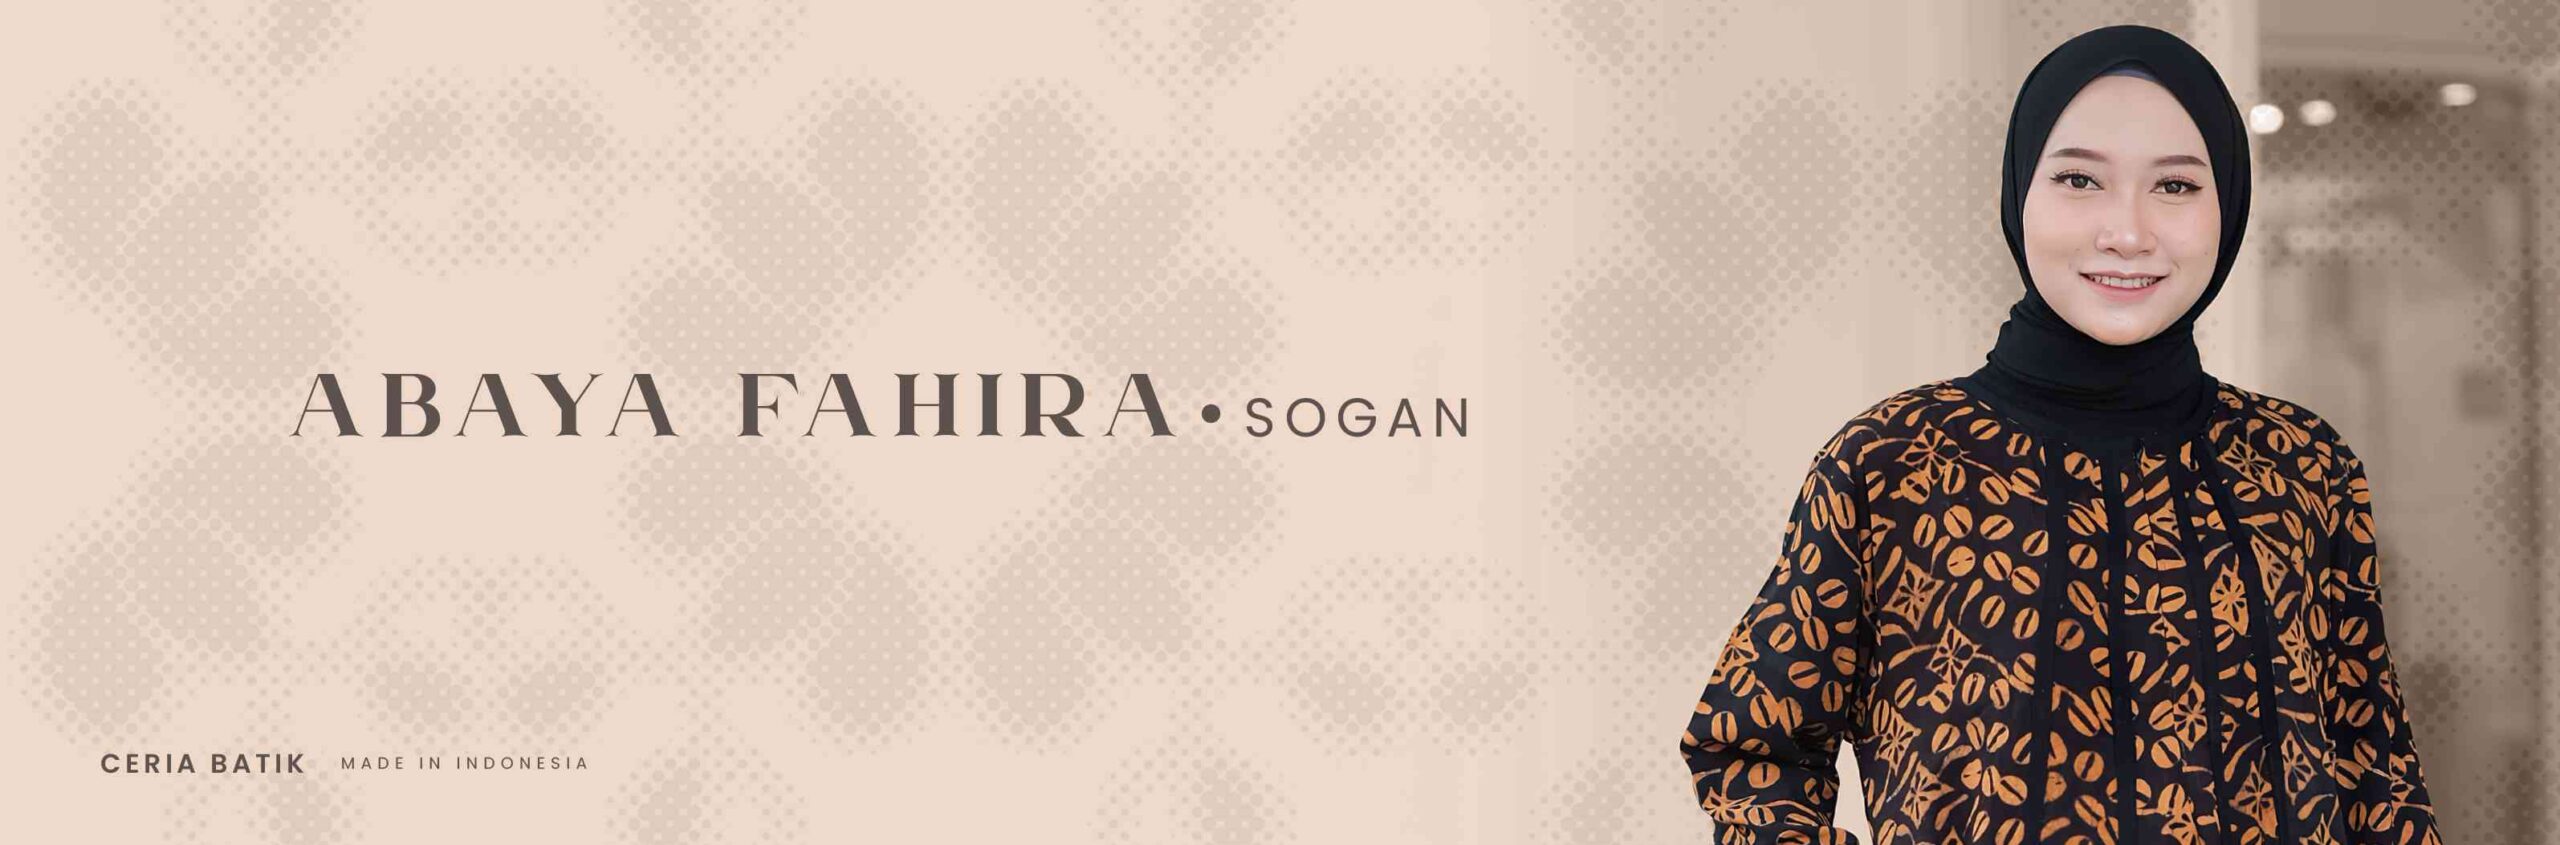 6. ABAYA FAHIRA - SOGAN